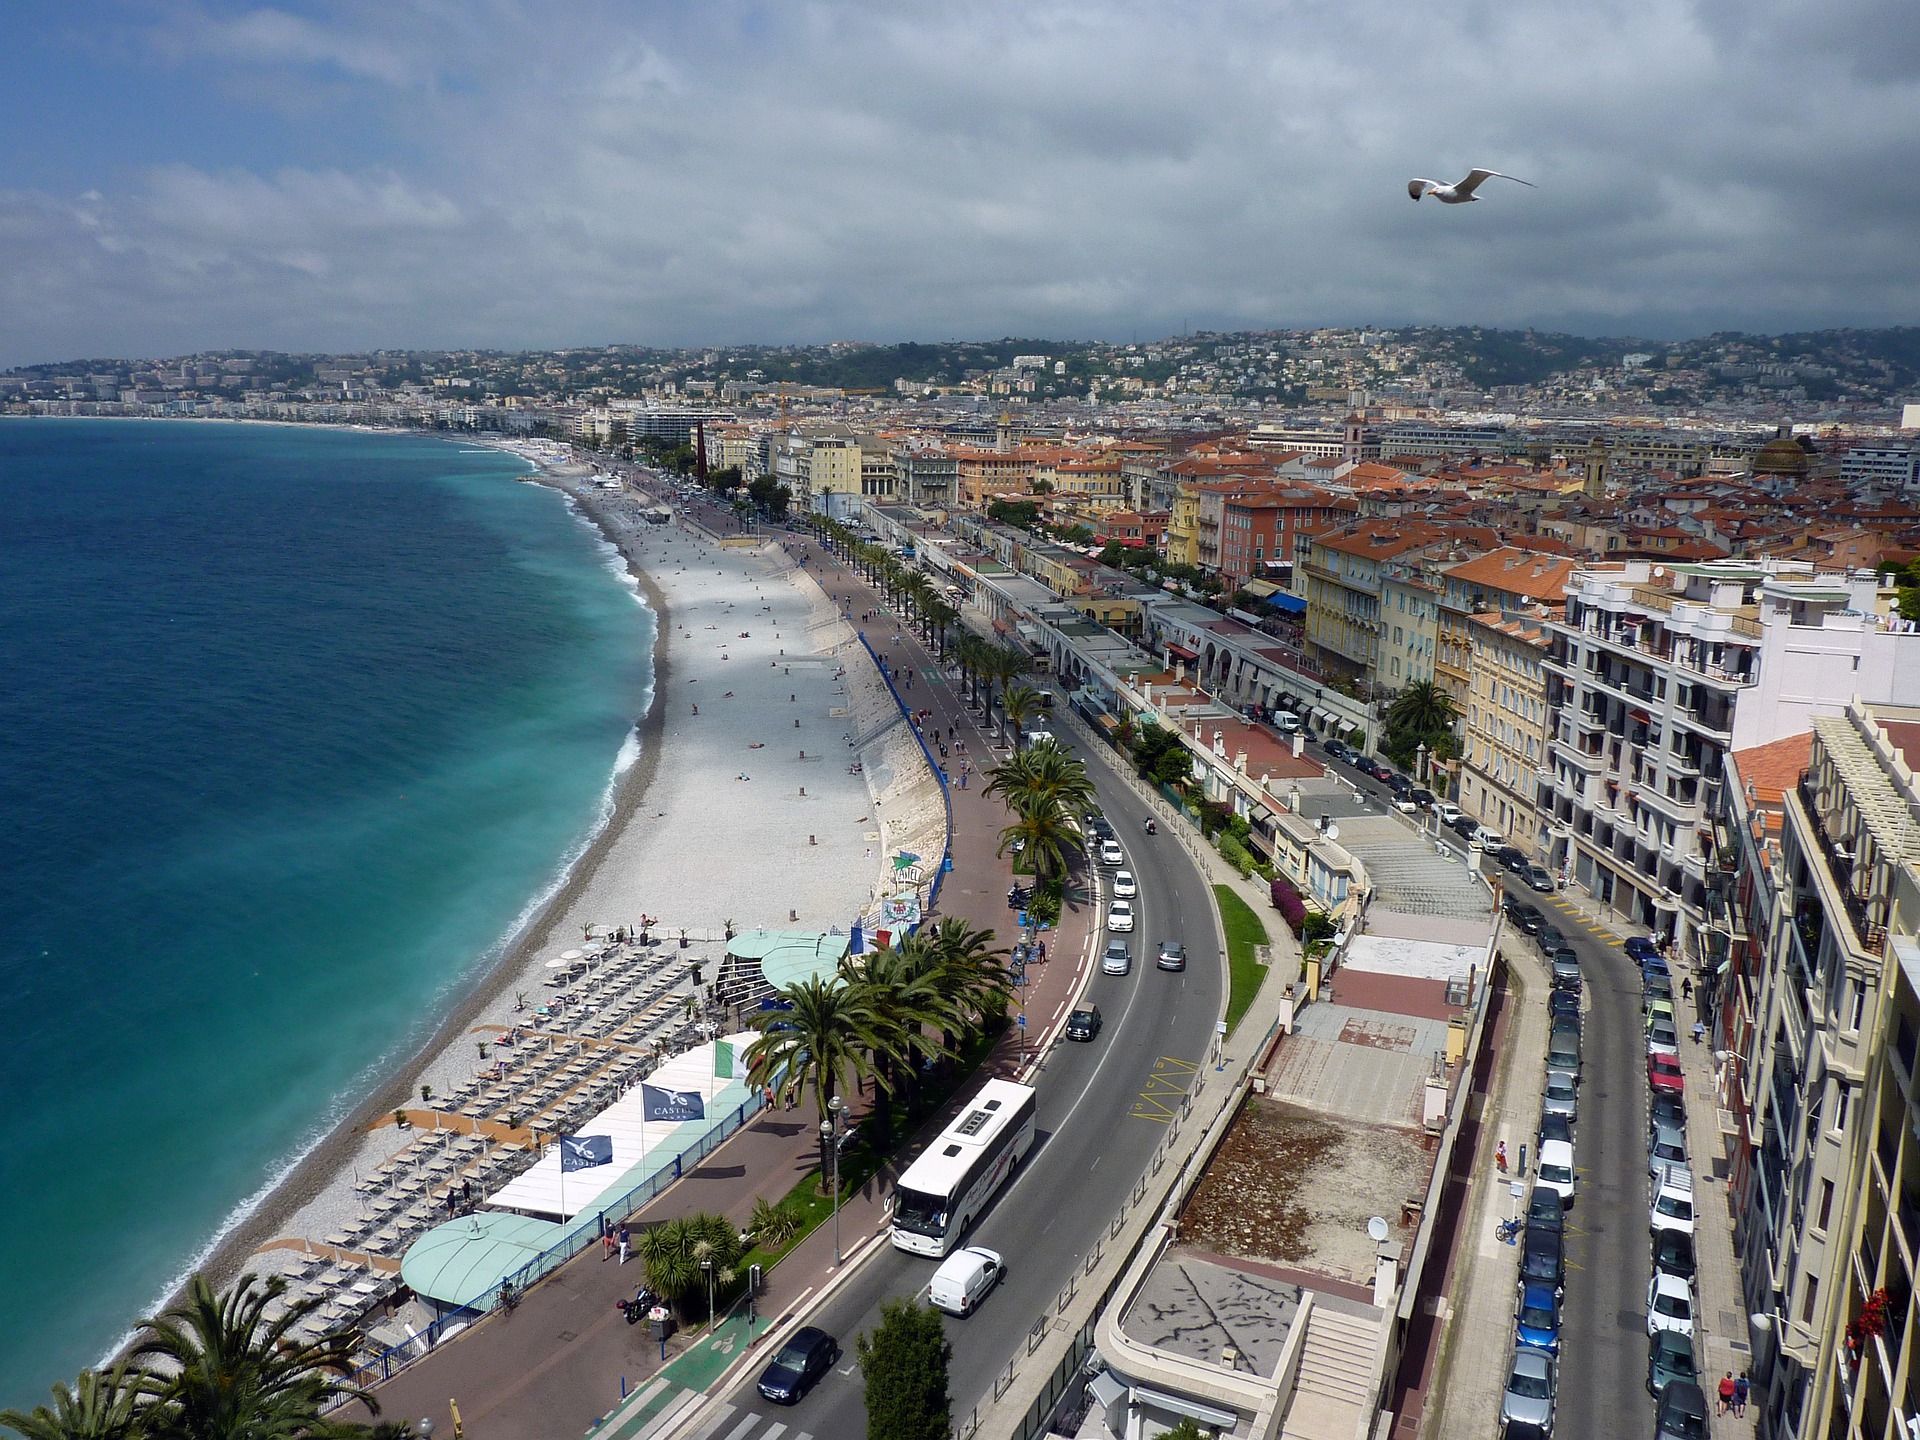 Le littoral de la Côte d'Azur est l'une des zones qui subit le plus d'artificialisation, comme ici à Nice. © Hermann, Pixabay